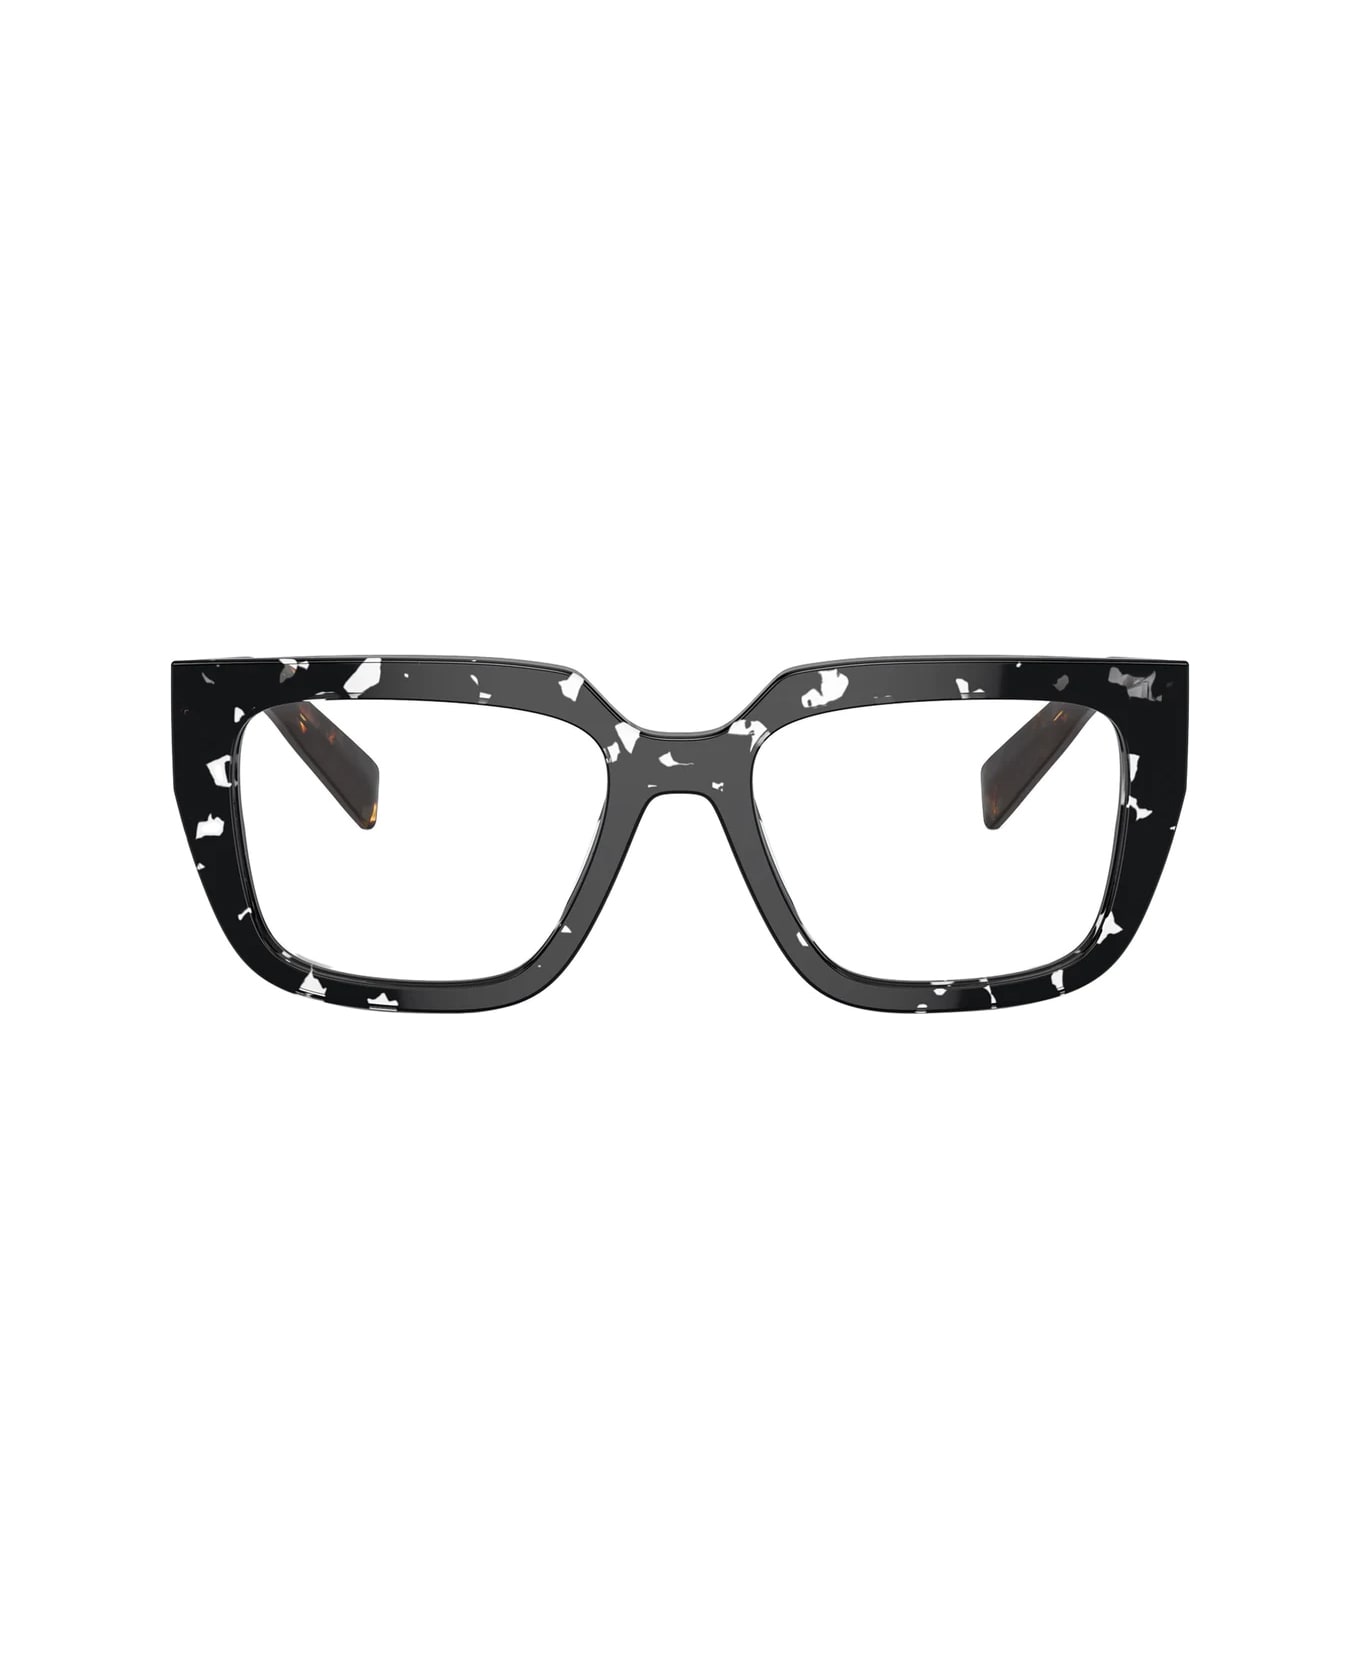 Prada Eyewear Pra03v 15o1o1 Glasses - Nero